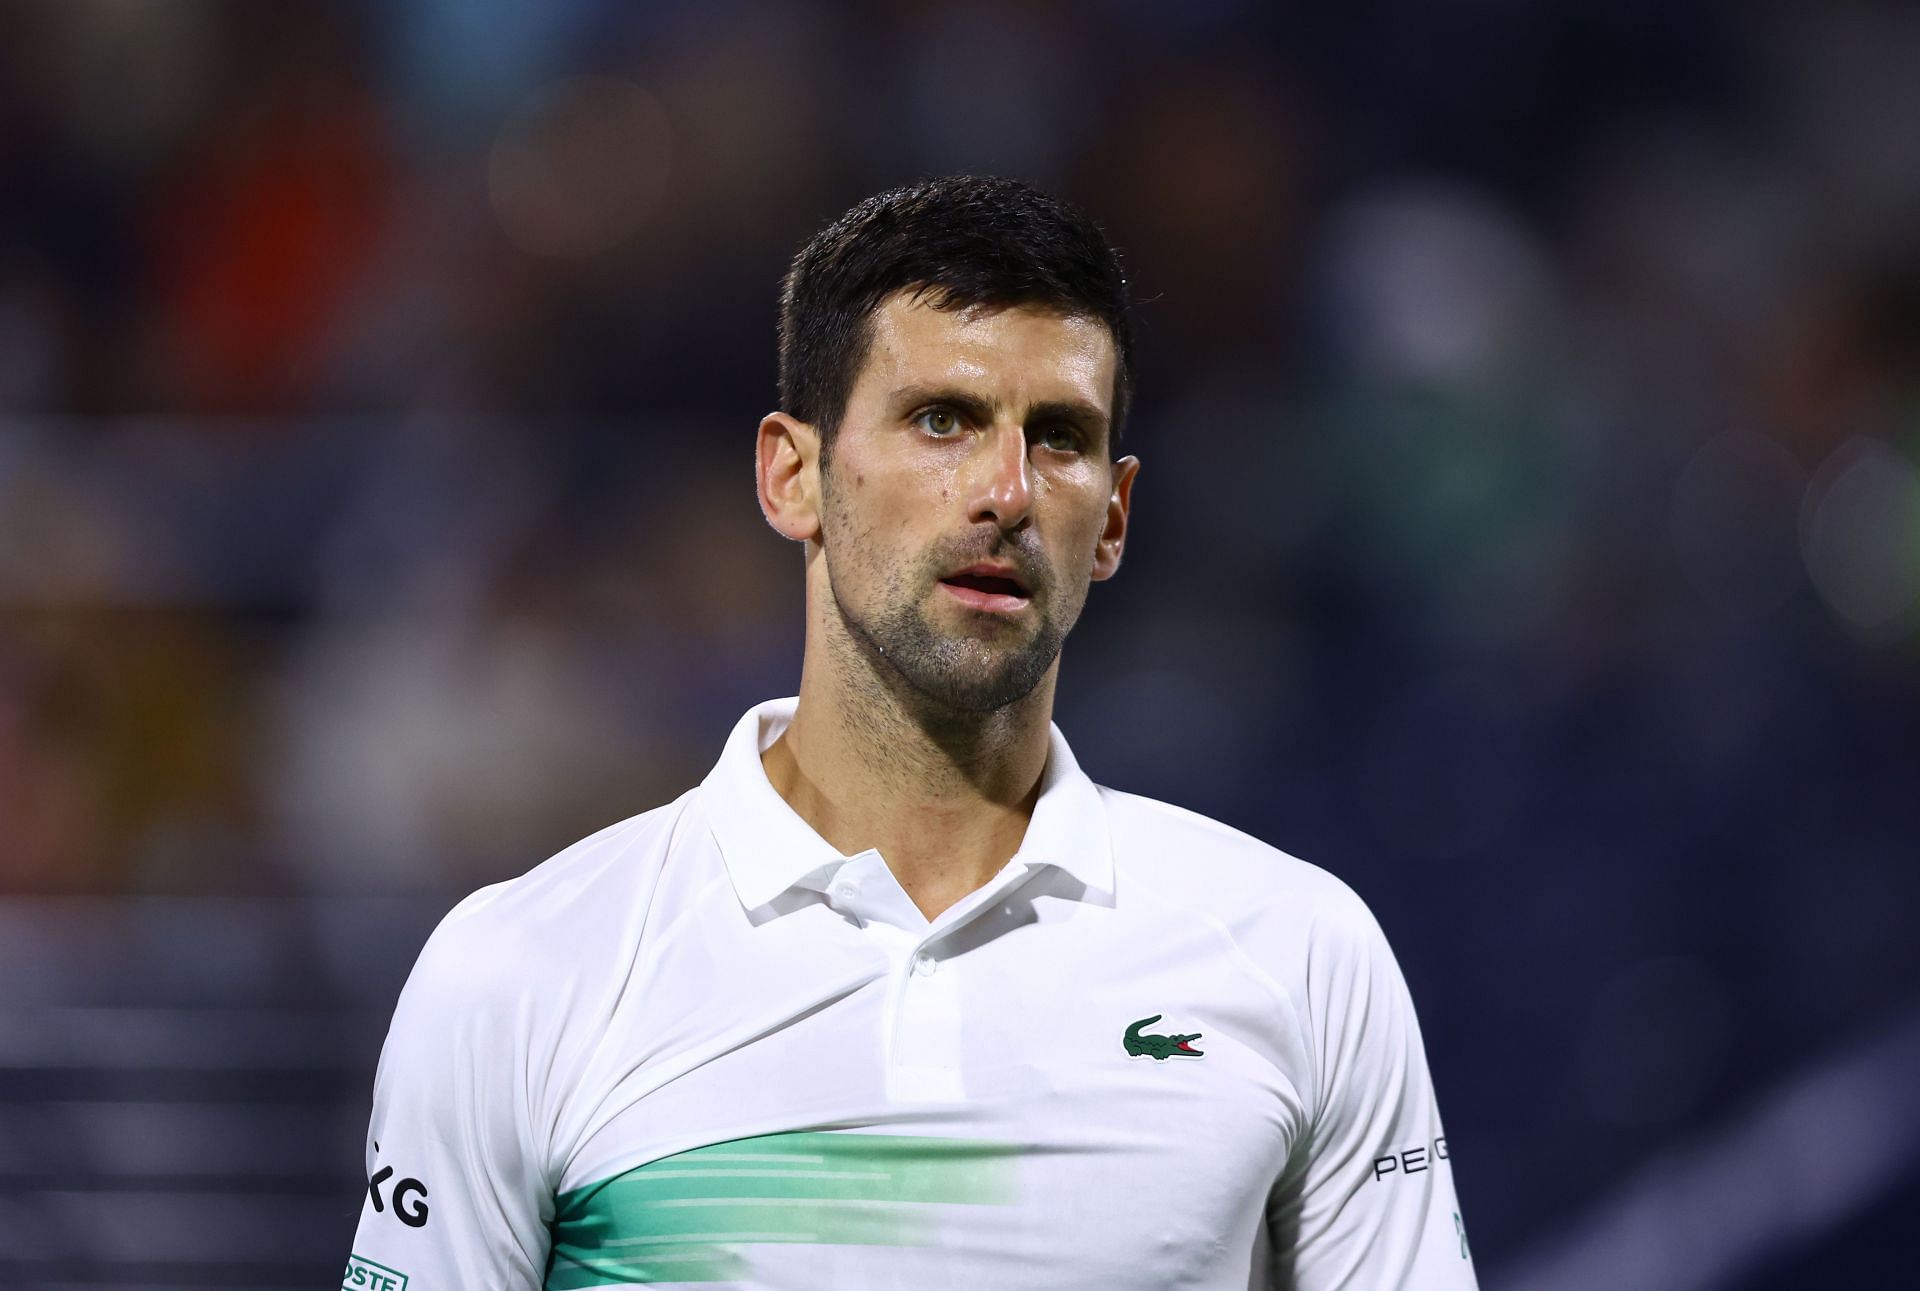 Novak Djokovic takes on De Minaur or Khachanov in the next round